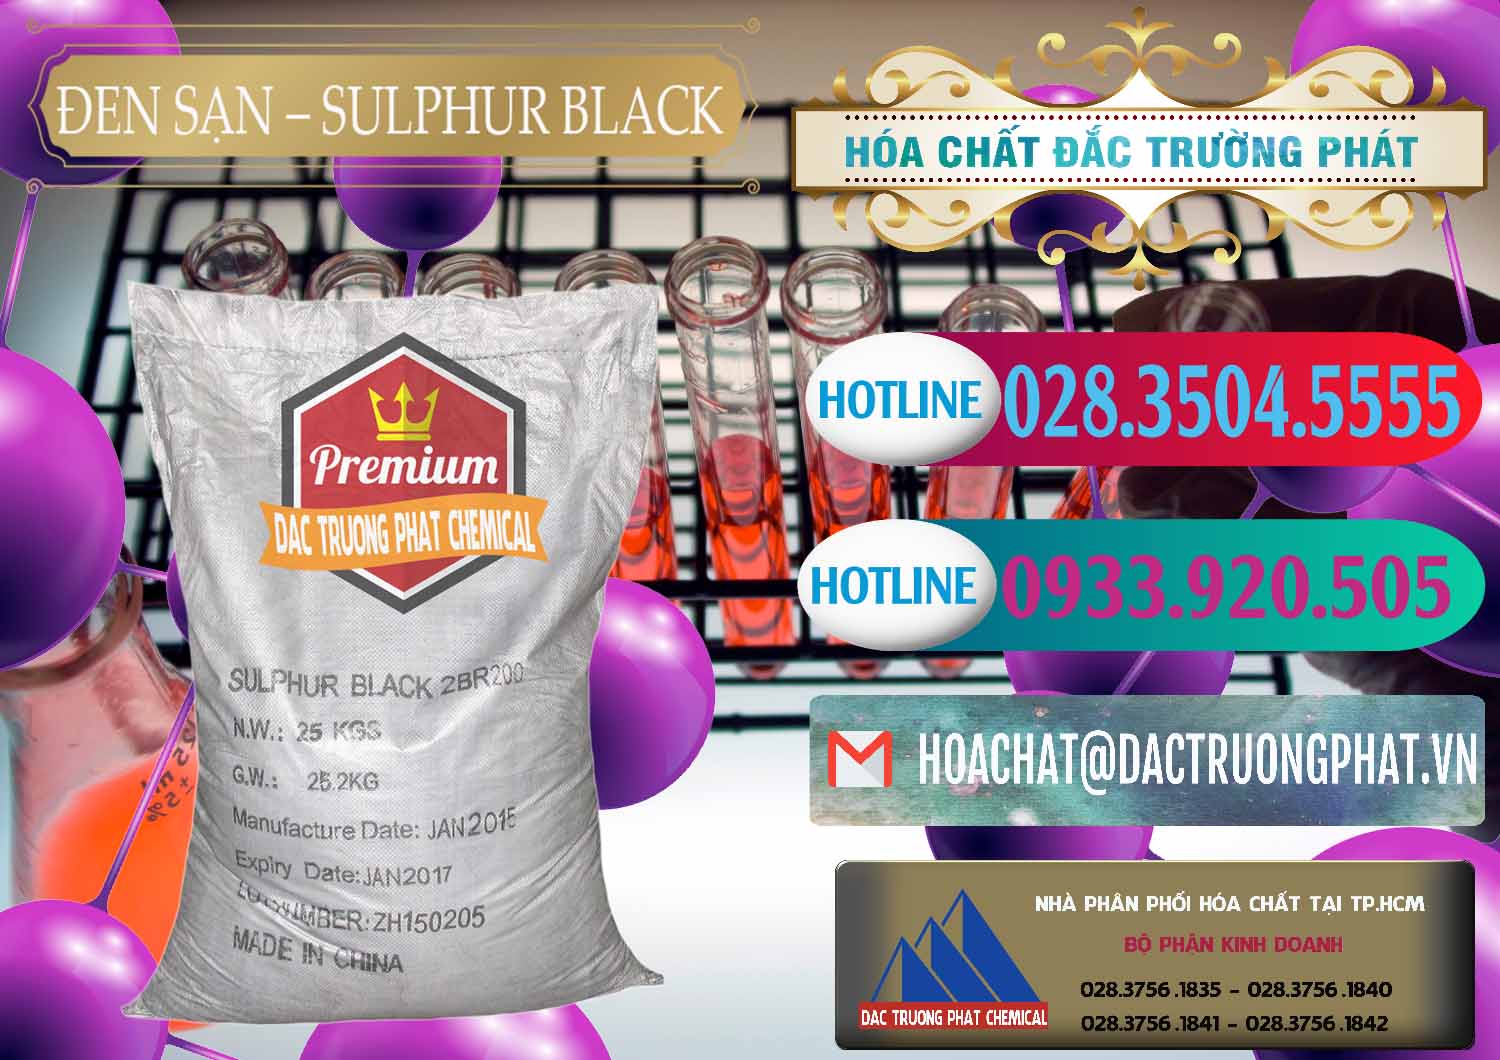 Công ty chuyên bán - phân phối Đen Sạn – Sulphur Black Trung Quốc China - 0062 - Cty chuyên bán _ phân phối hóa chất tại TP.HCM - truongphat.vn